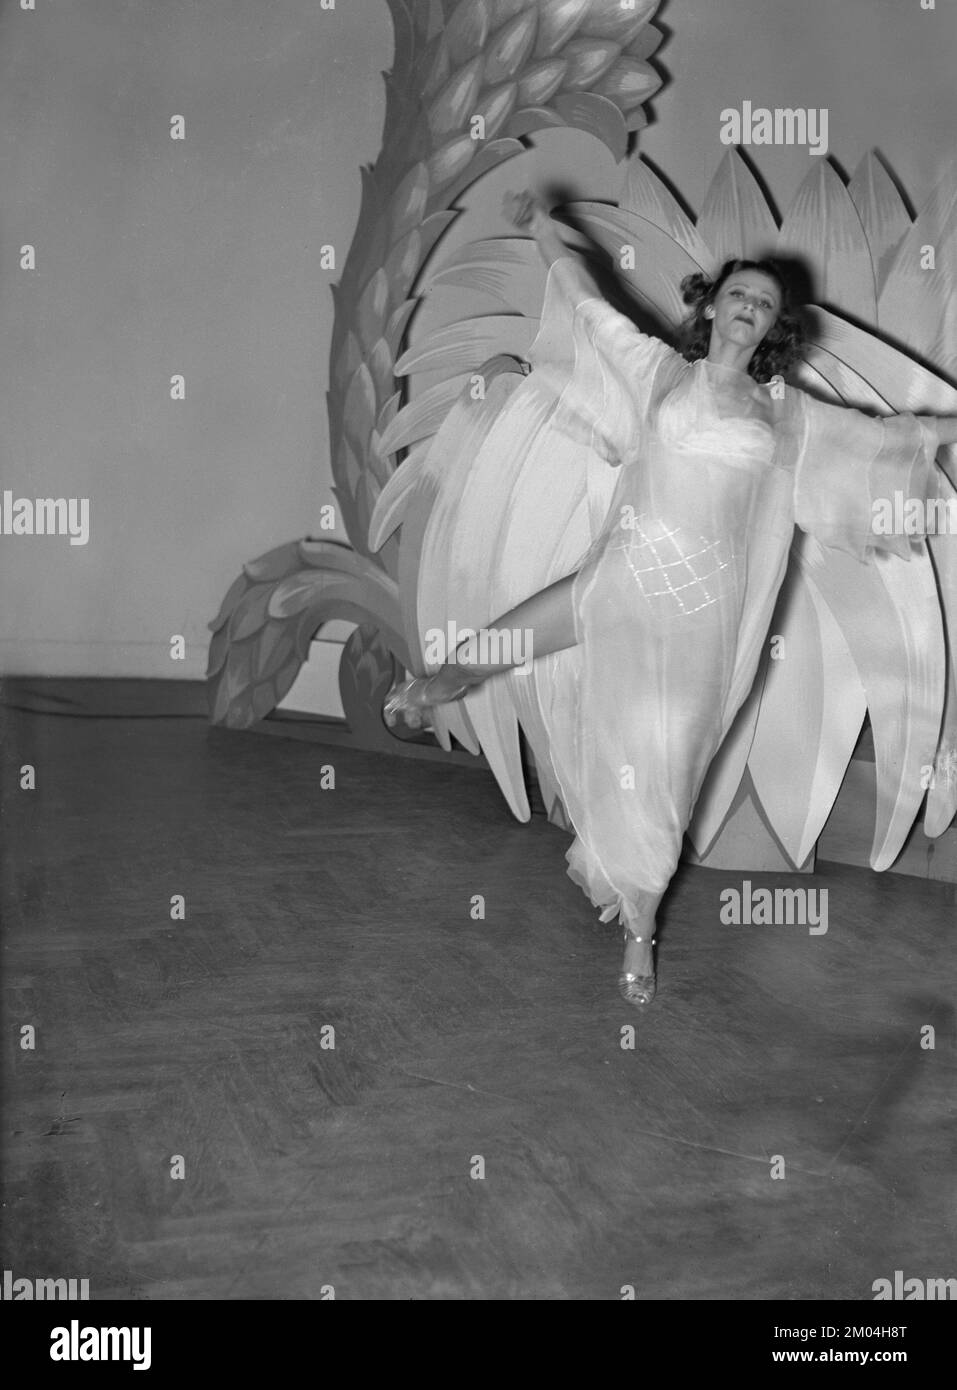 Sur l'étape 1939. On voit la jeune femme jouer sur scène en portant un costume de théâtre avec décor derrière elle. Suède novembre 1939 22-7 Banque D'Images